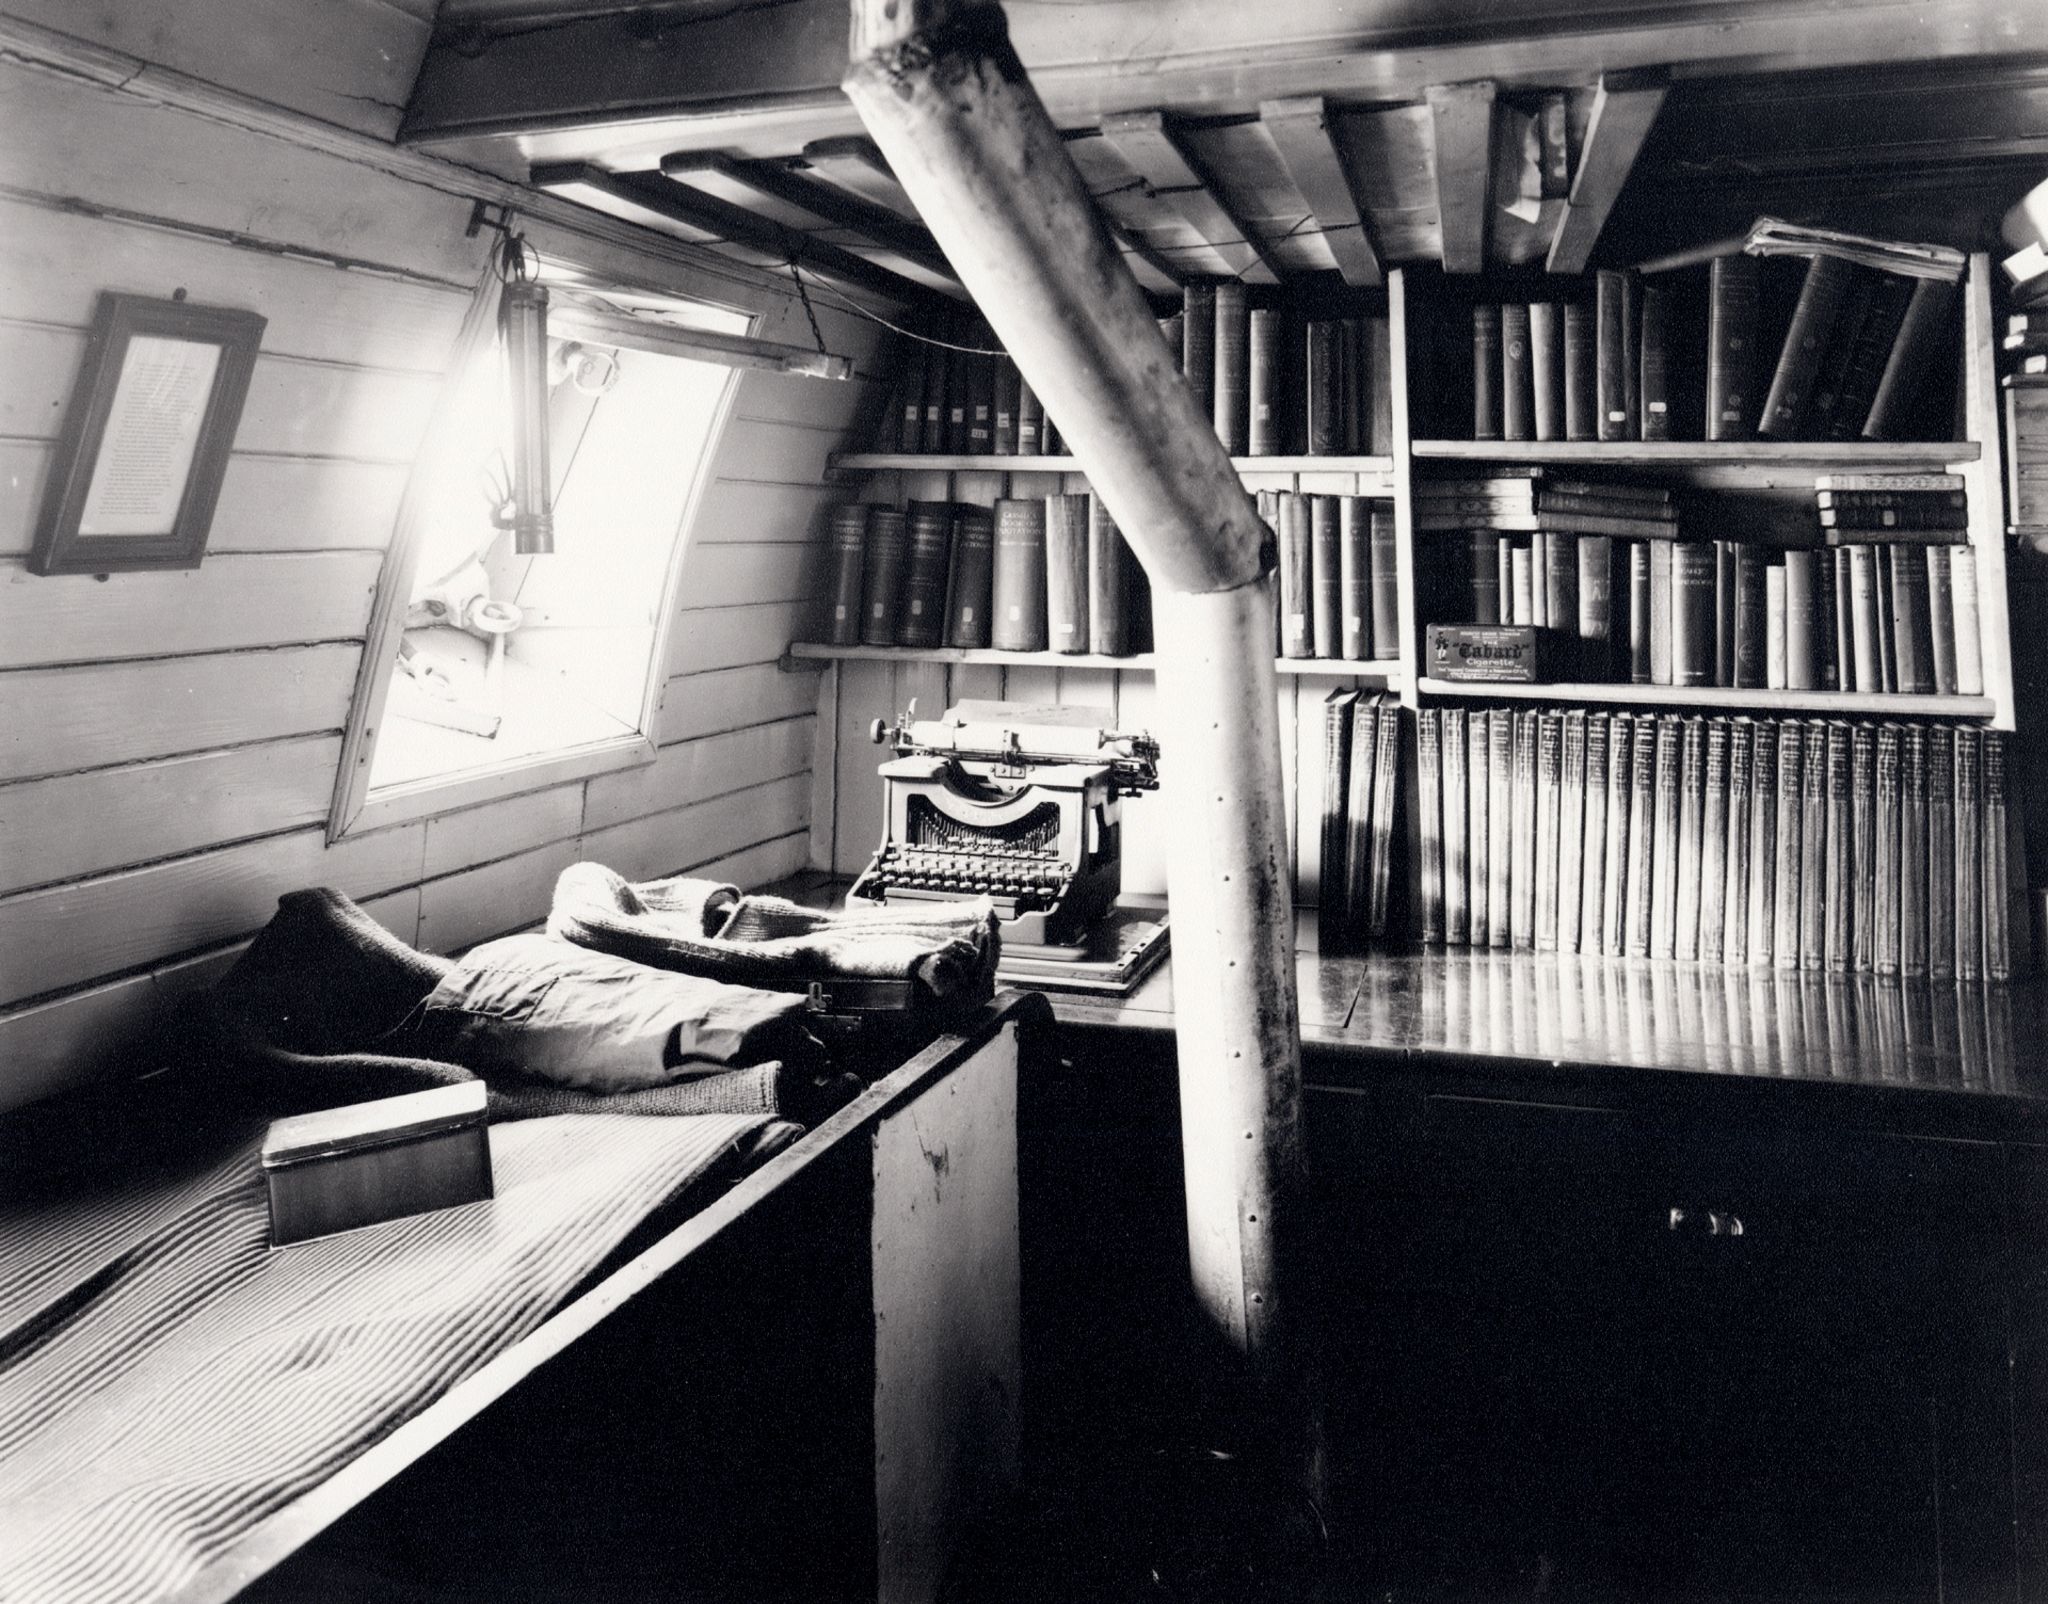 Bookshelves in Shackleton's cabin on Endurance, 1915